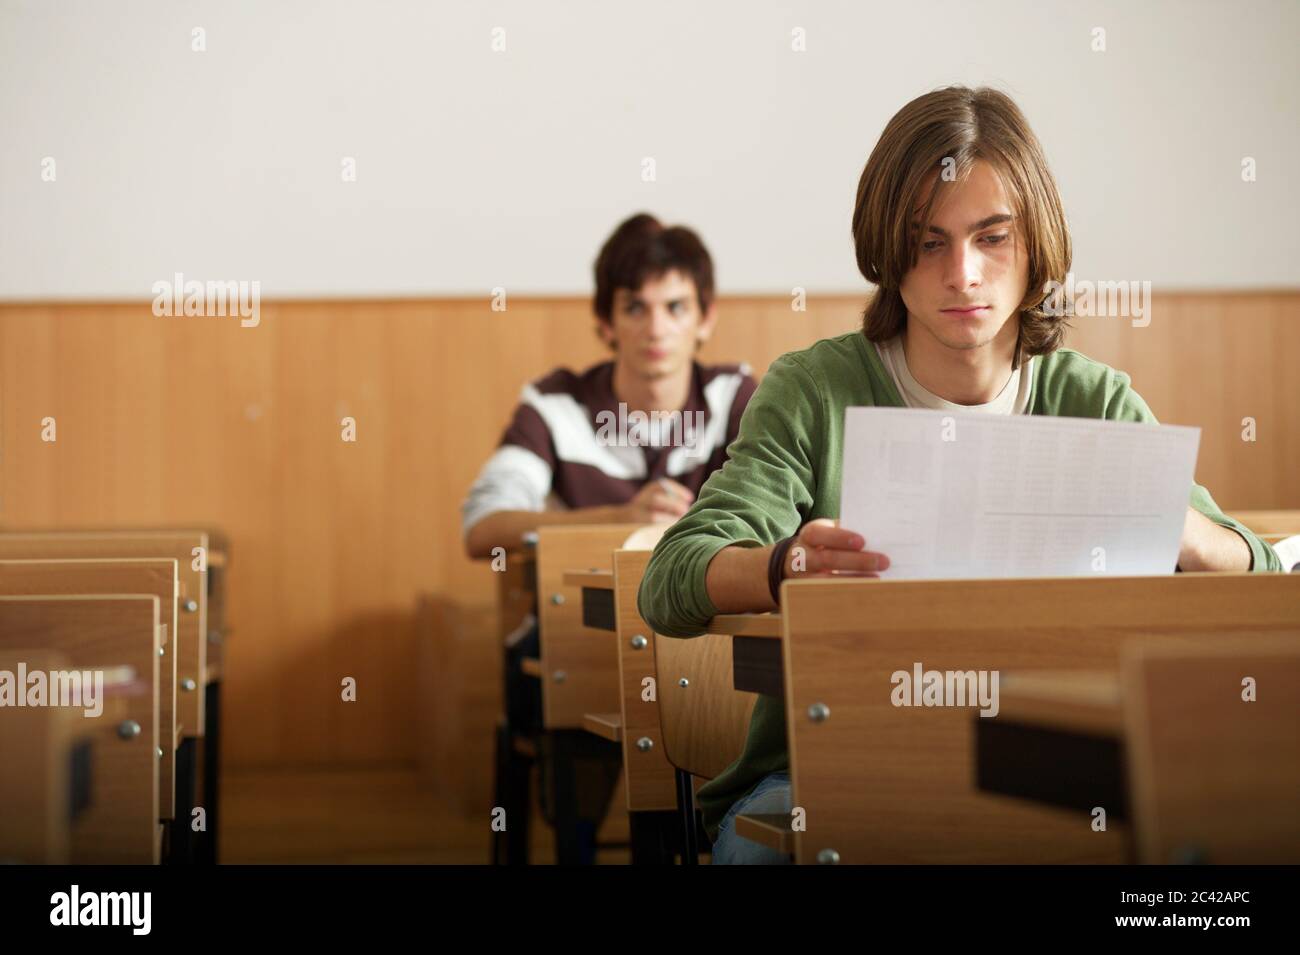 Junge mit mittellangen Haaren sieht sich Aufgaben - Klassenzimmer - Schüler - Prüfung Stockfoto